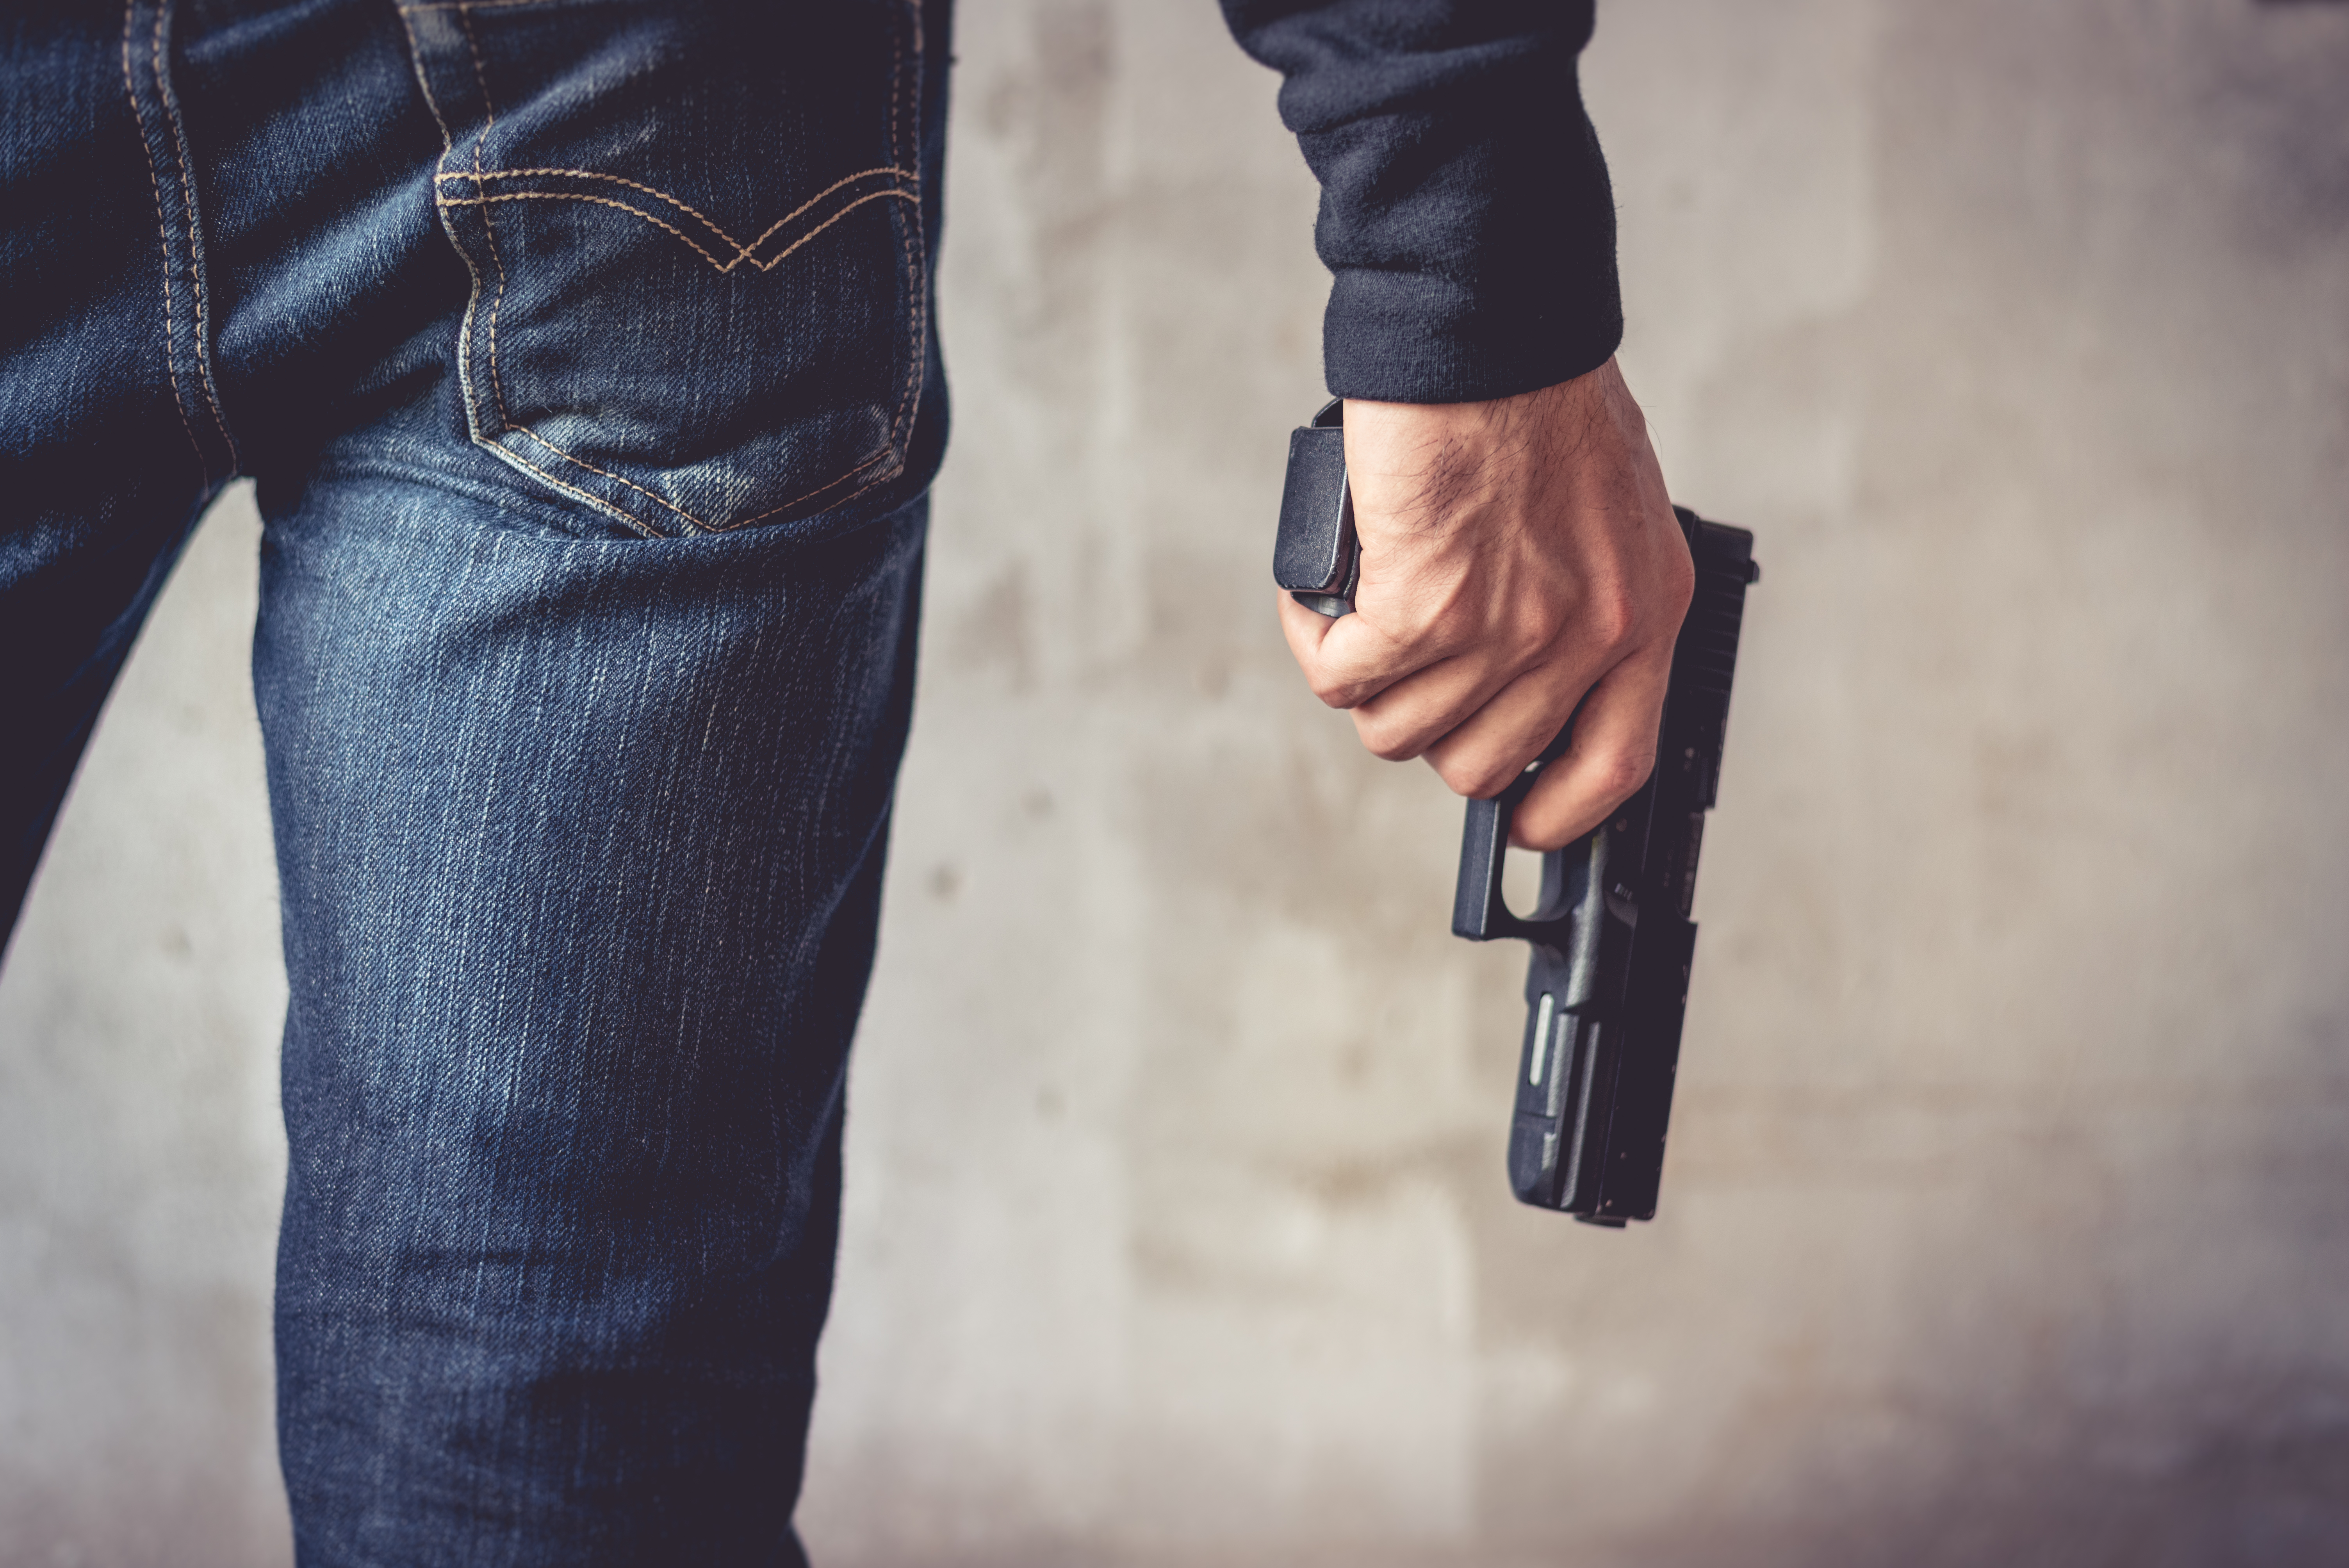 Close up of man holding hand gun | Source: Shutterstock